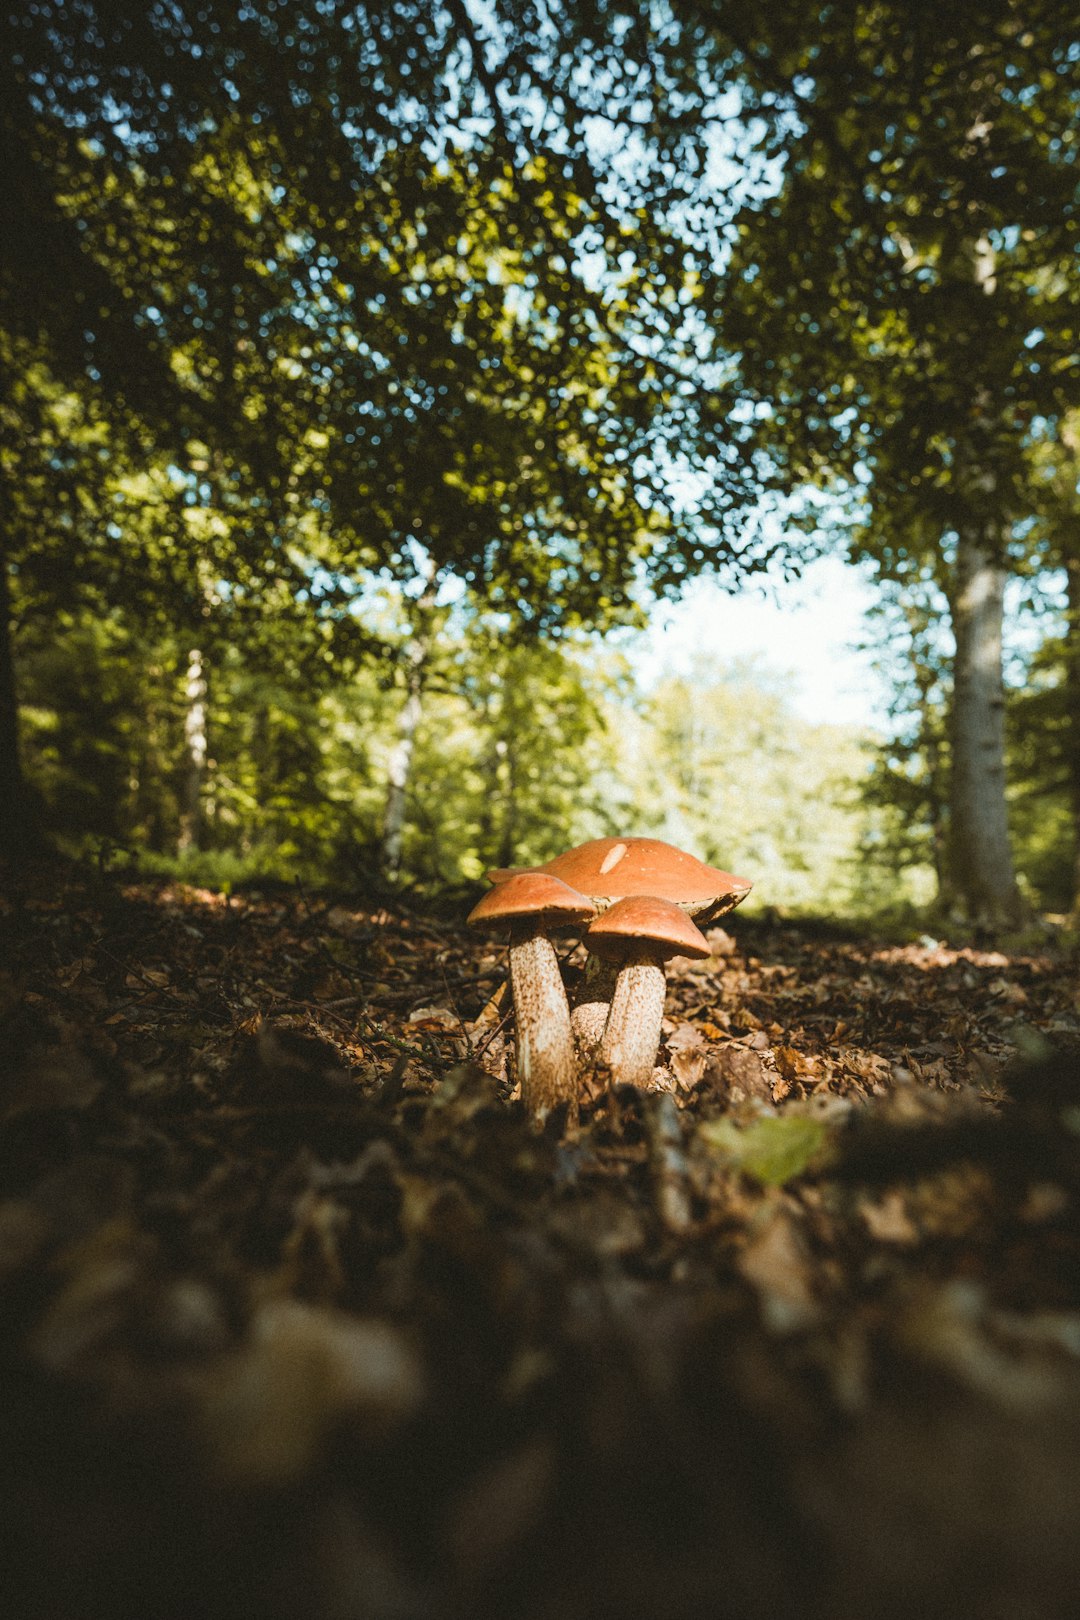 brown mushroom on brown soil